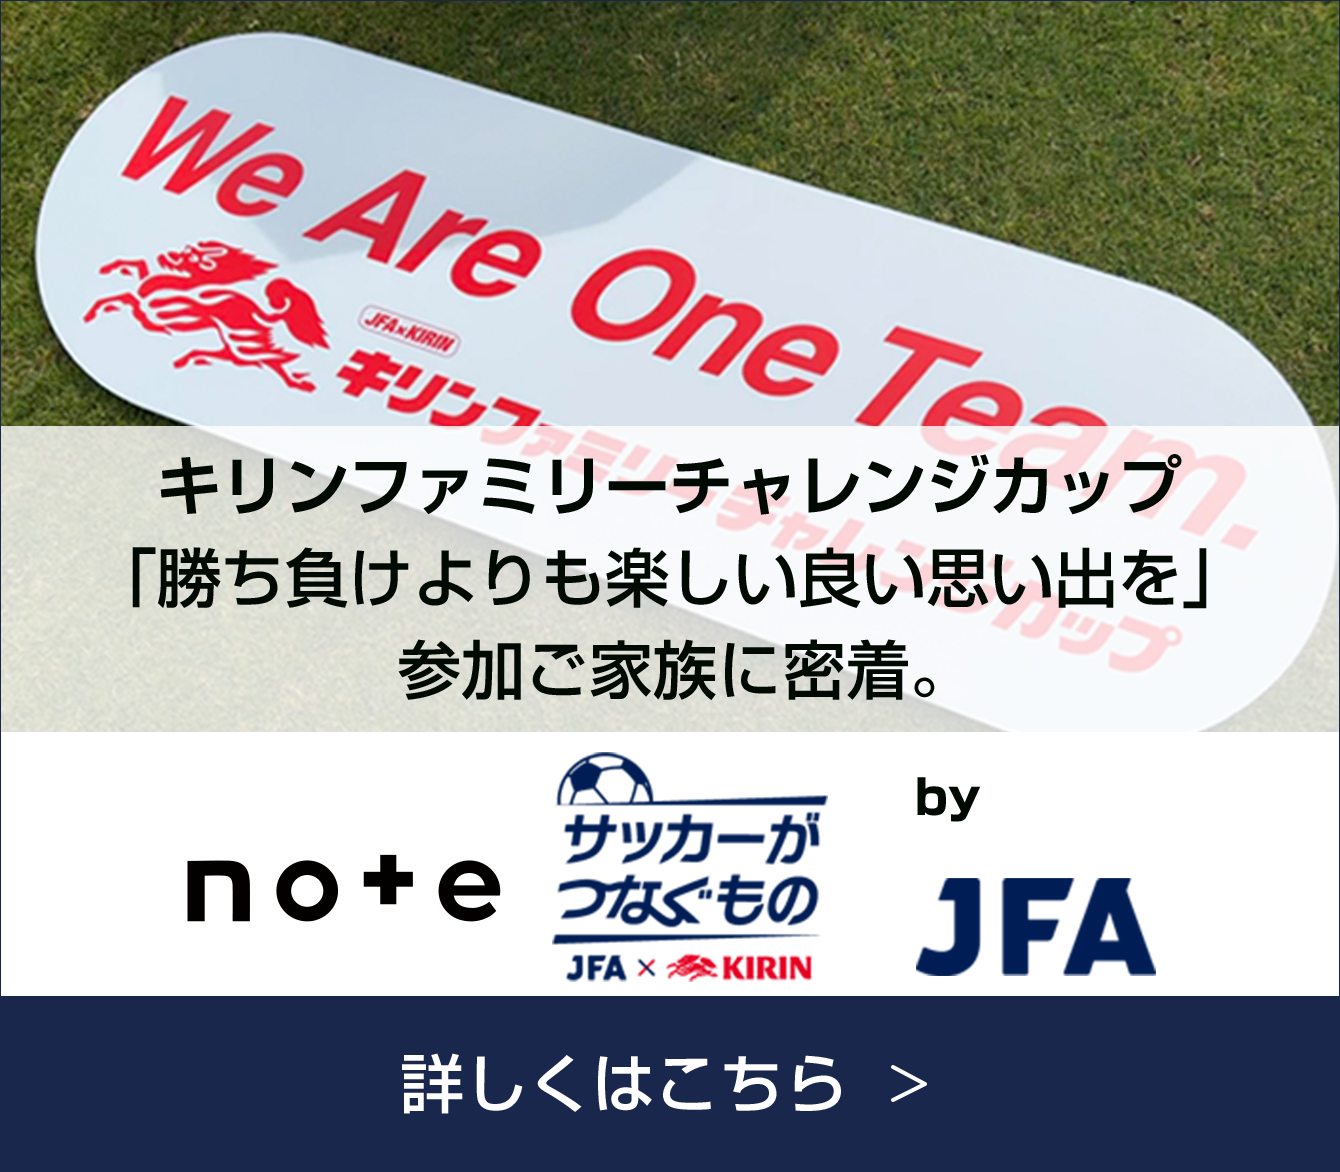 note+ サッカーがつなぐもの JFA×KIRIN by JFA キリンファミリーチャレンジカップ 「勝ち負けよりも楽しい良い思い出を」参加ご家族に密着。 詳しくはこちら